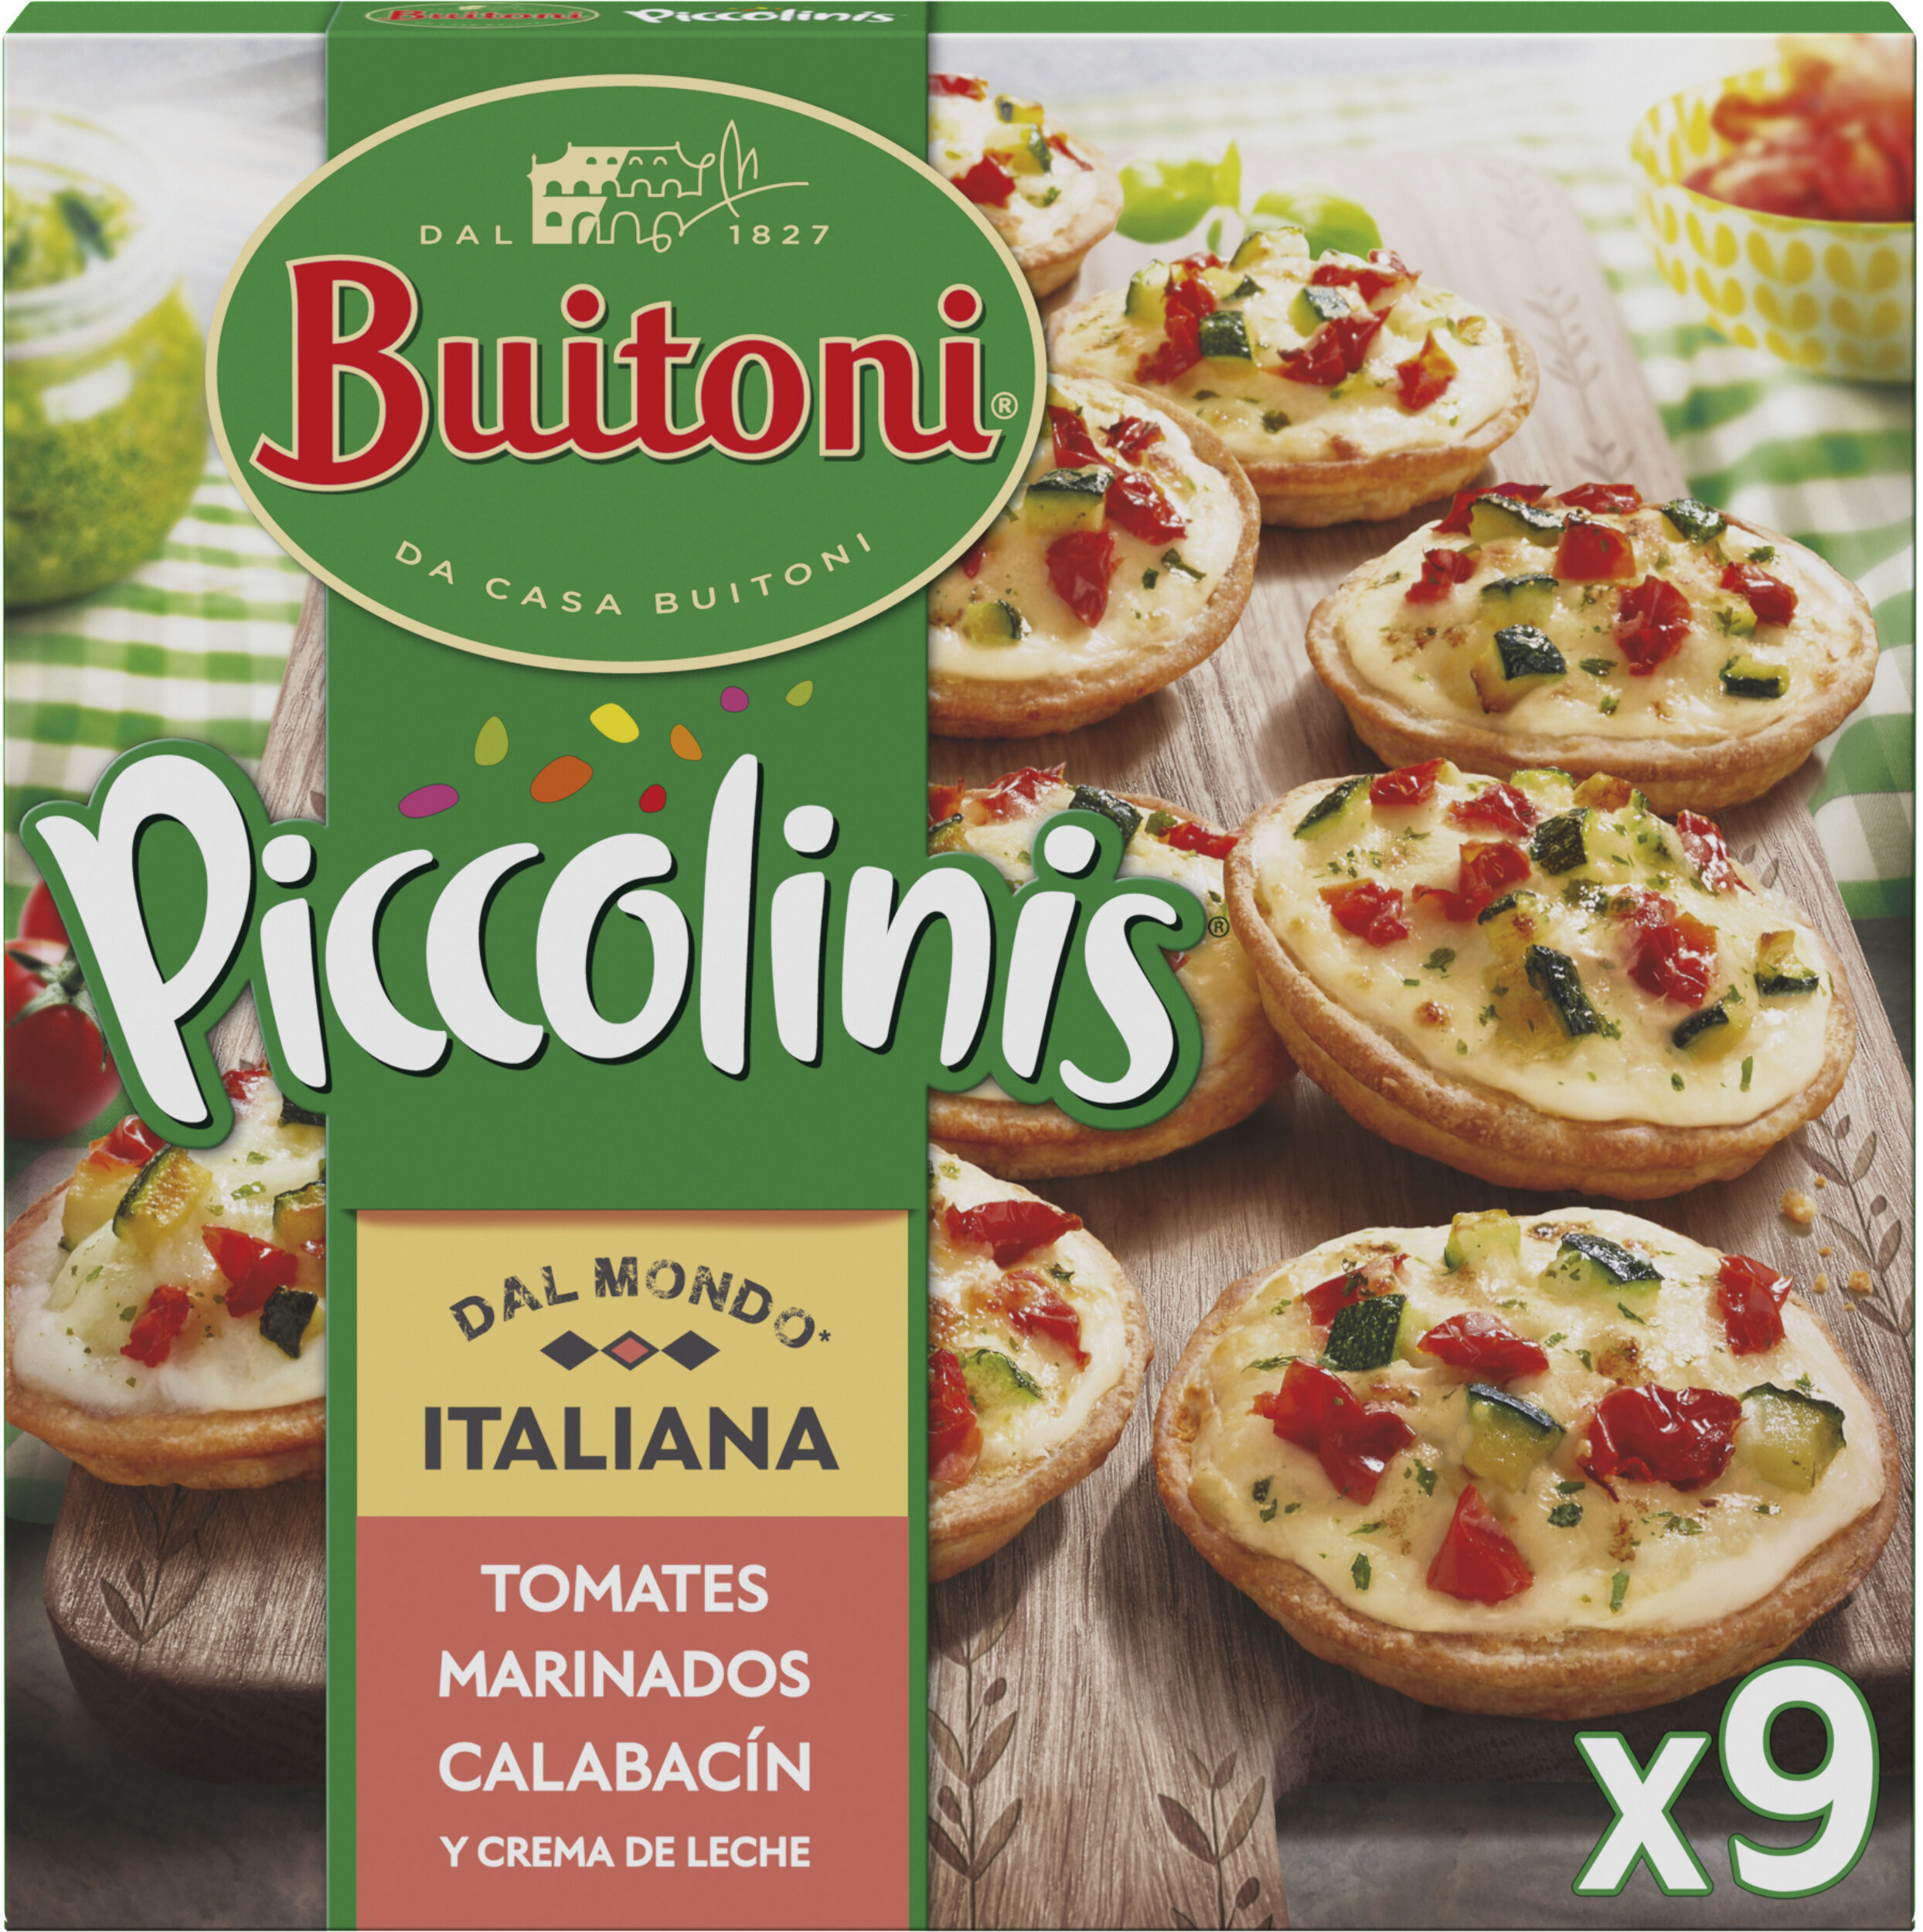 BUITONI PICCOLINIS mini-pizzas surgelées Italiana 9x30g (270g) - Produit